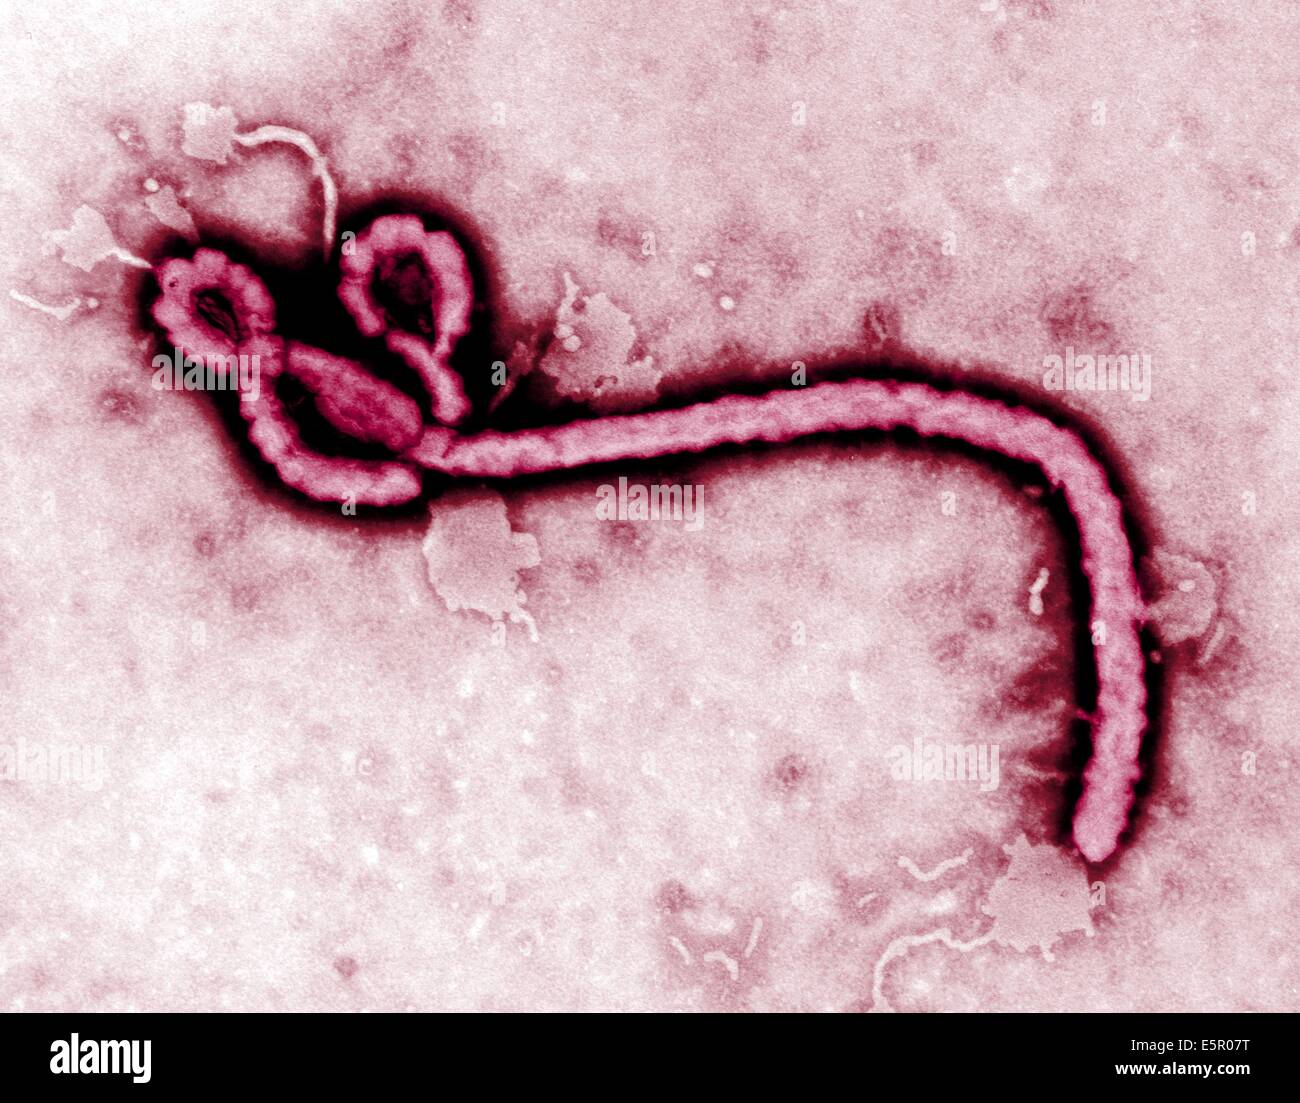 Renforcement de couleur Micrographie électronique à transmission (TEM) du virus ebola, un virus à ARN (filovirus) qui provoque une fièvre hémorragique. Banque D'Images